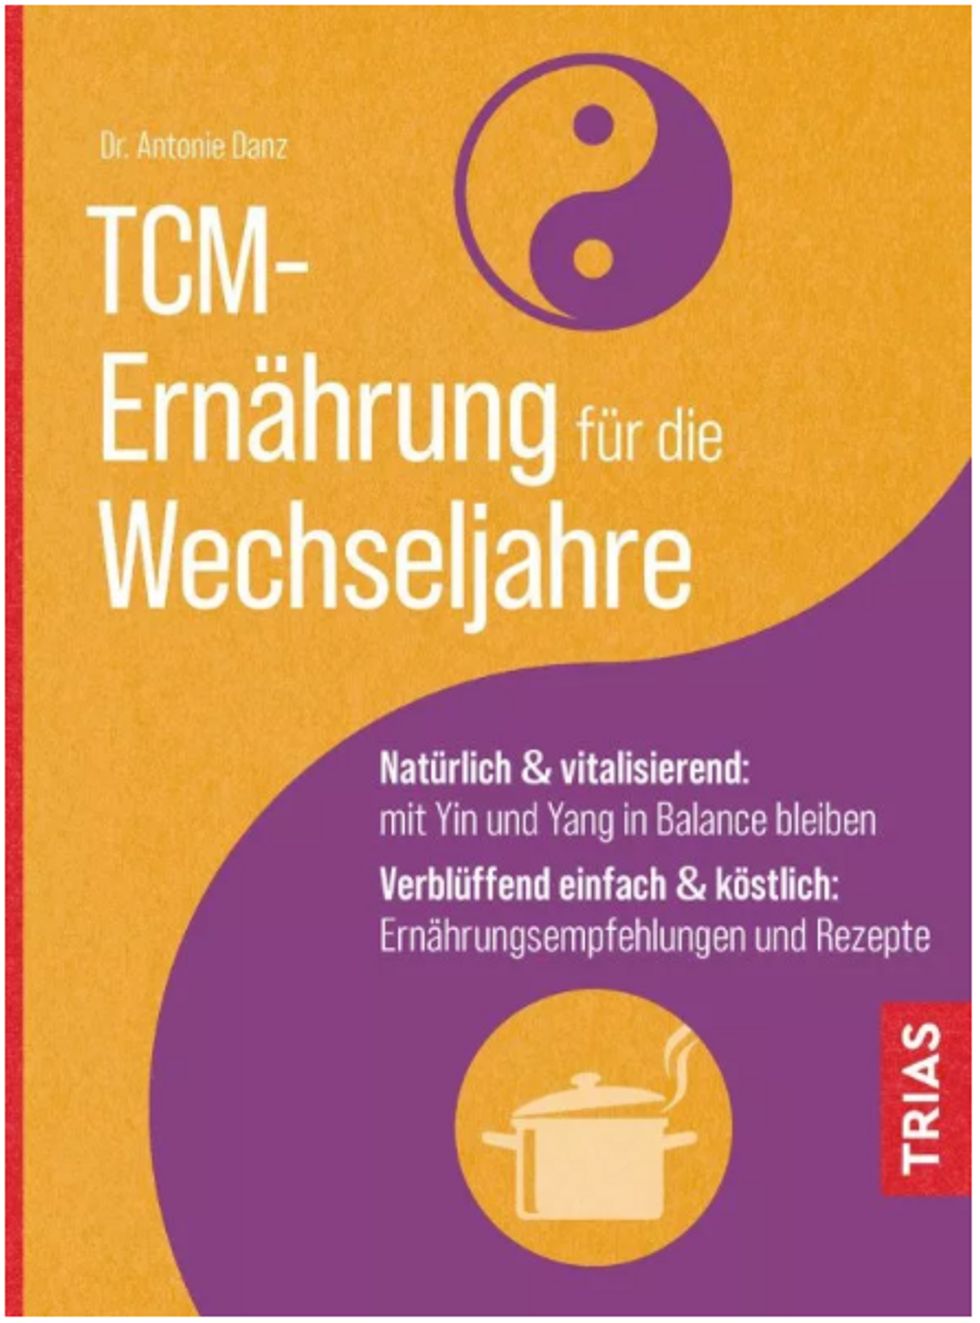 TCM-Ernährung für die Wechseljahre